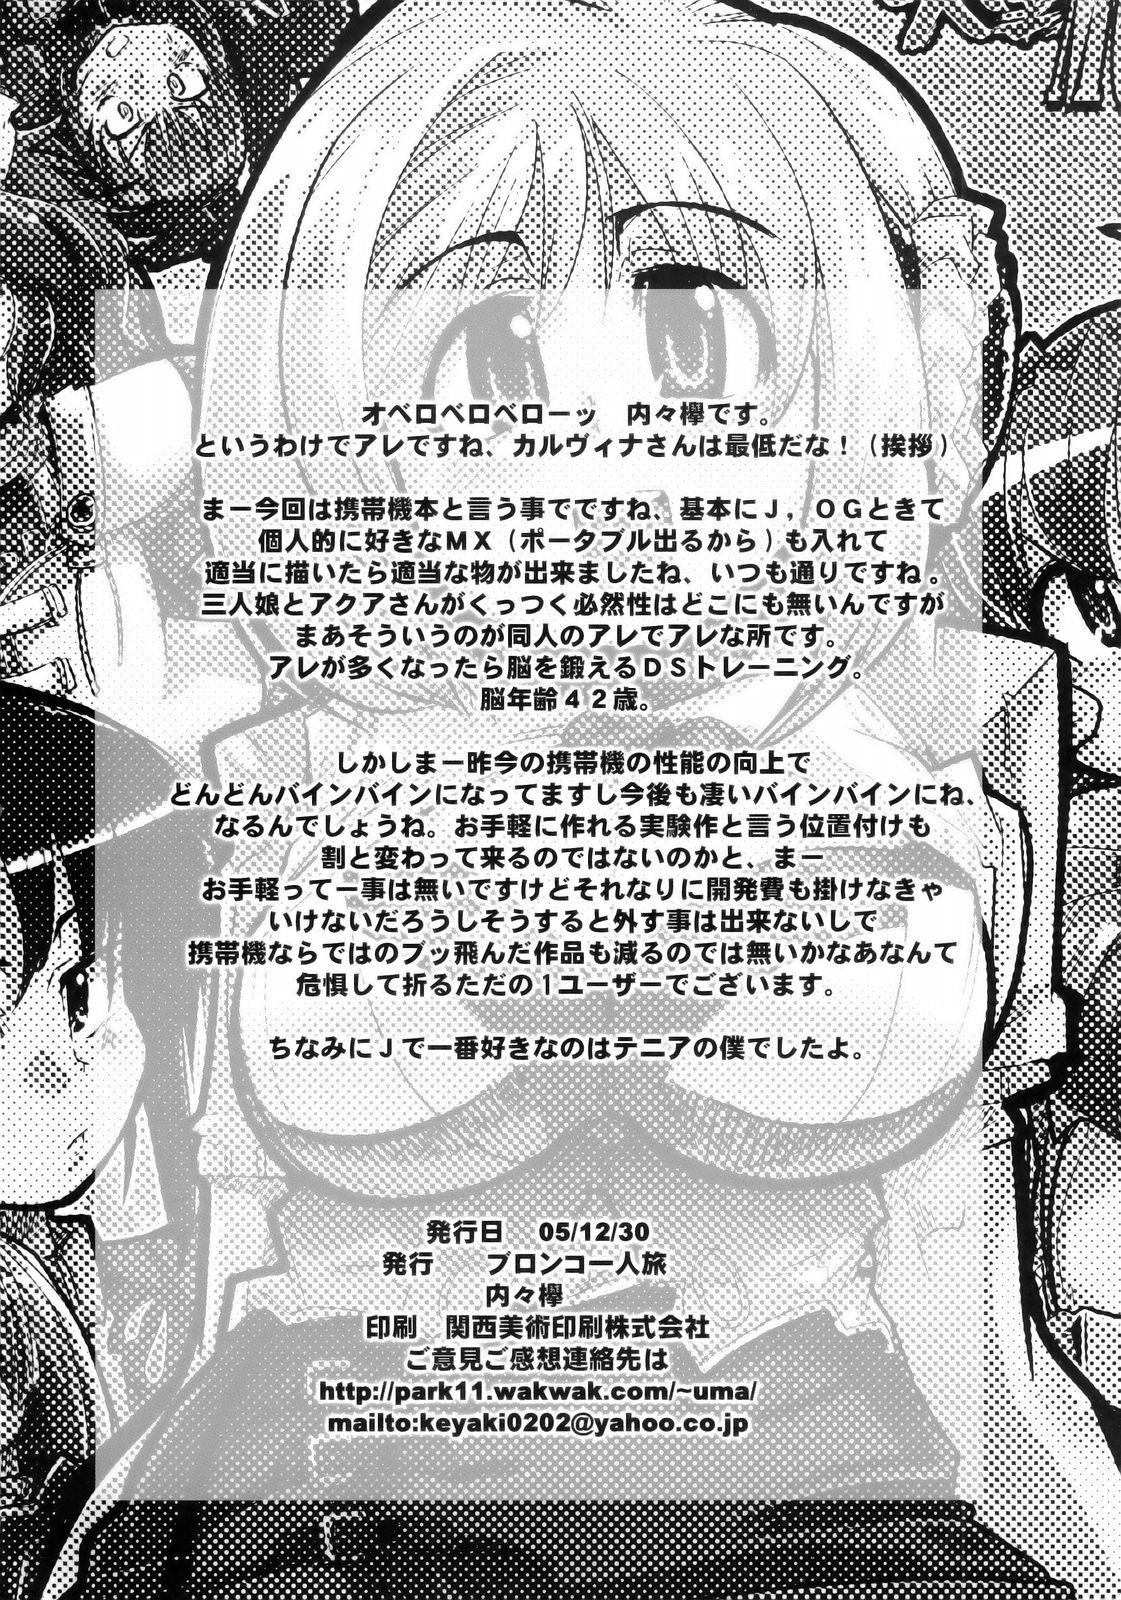 Pink Boku no Watashi no Super Bobobbo Taisen MGJOX - Super robot wars Play - Page 29